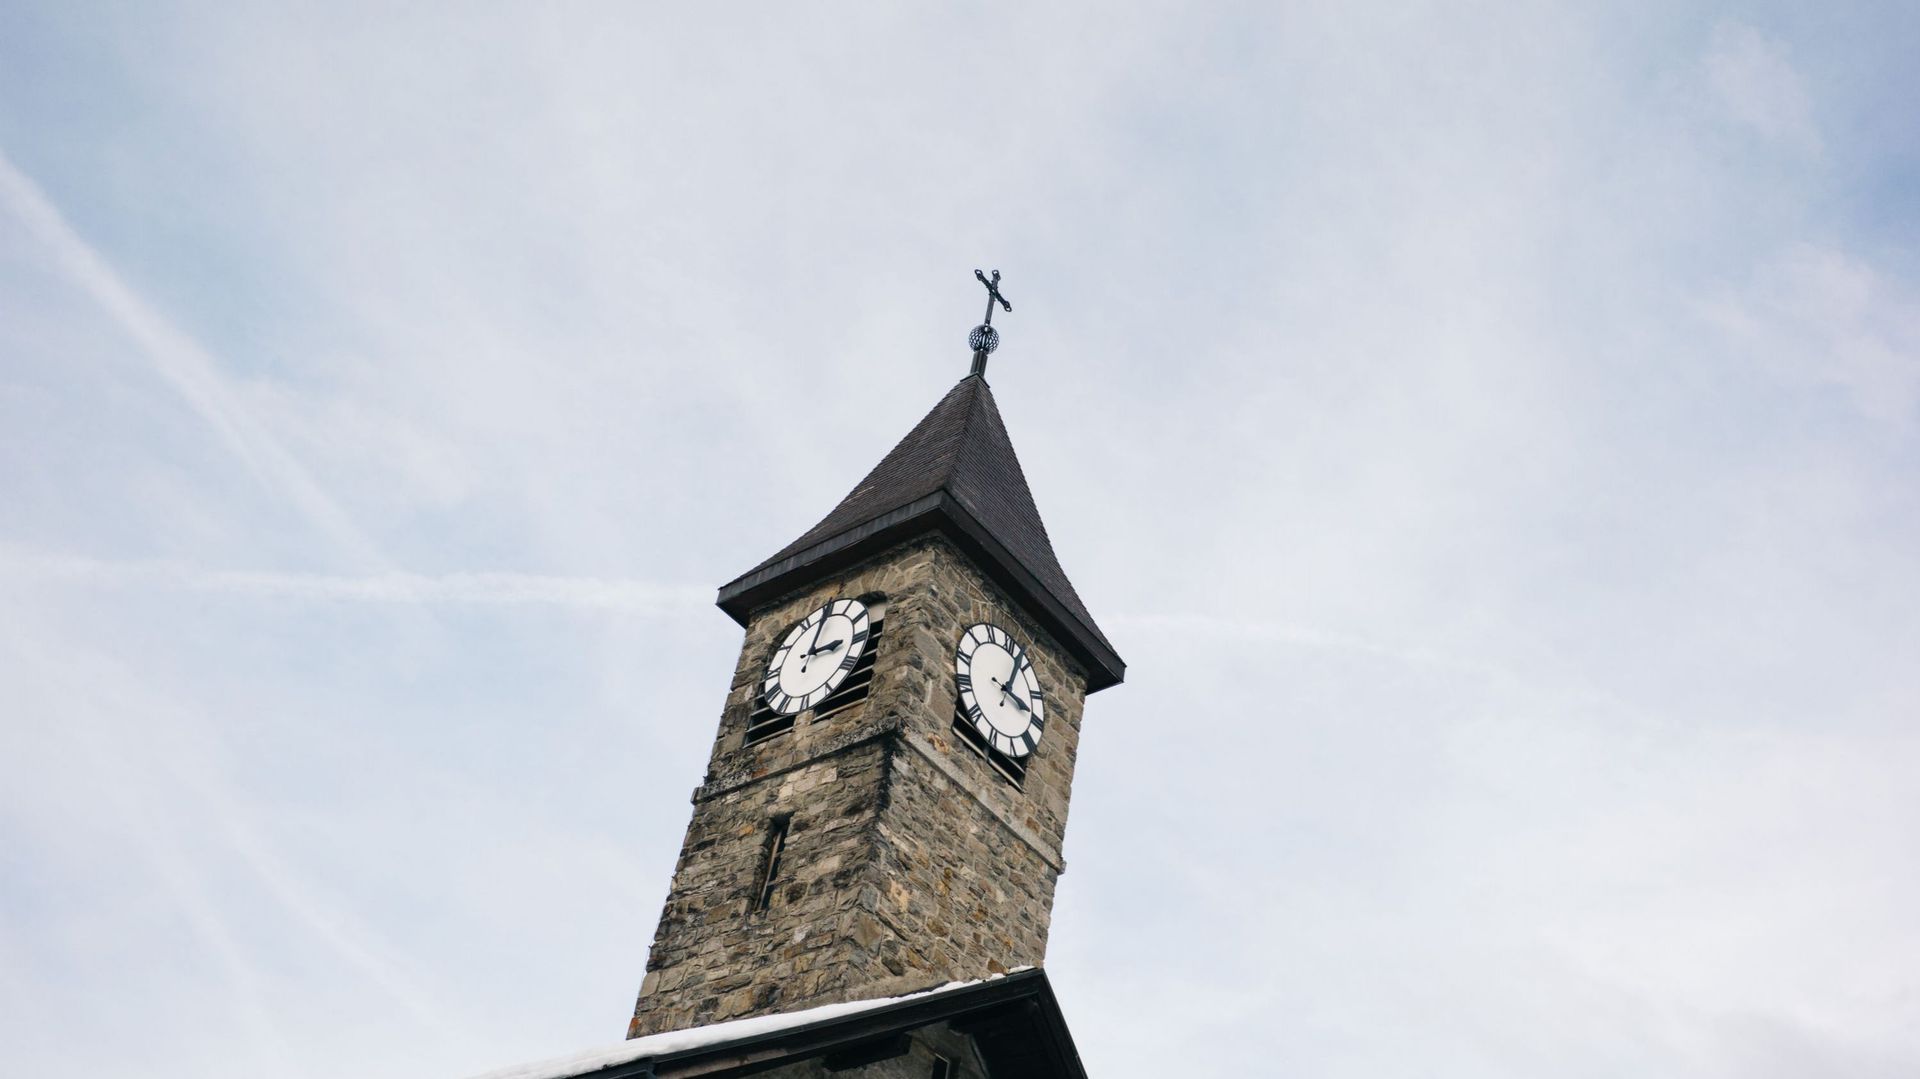 l'Eglise catholique suisse commande une étude indépendante universitaire pour faire la lumière sur les agressions sexuelles commises en son sein depuis le milieu du 20e siècle et "tirer les leçons" du passé.
